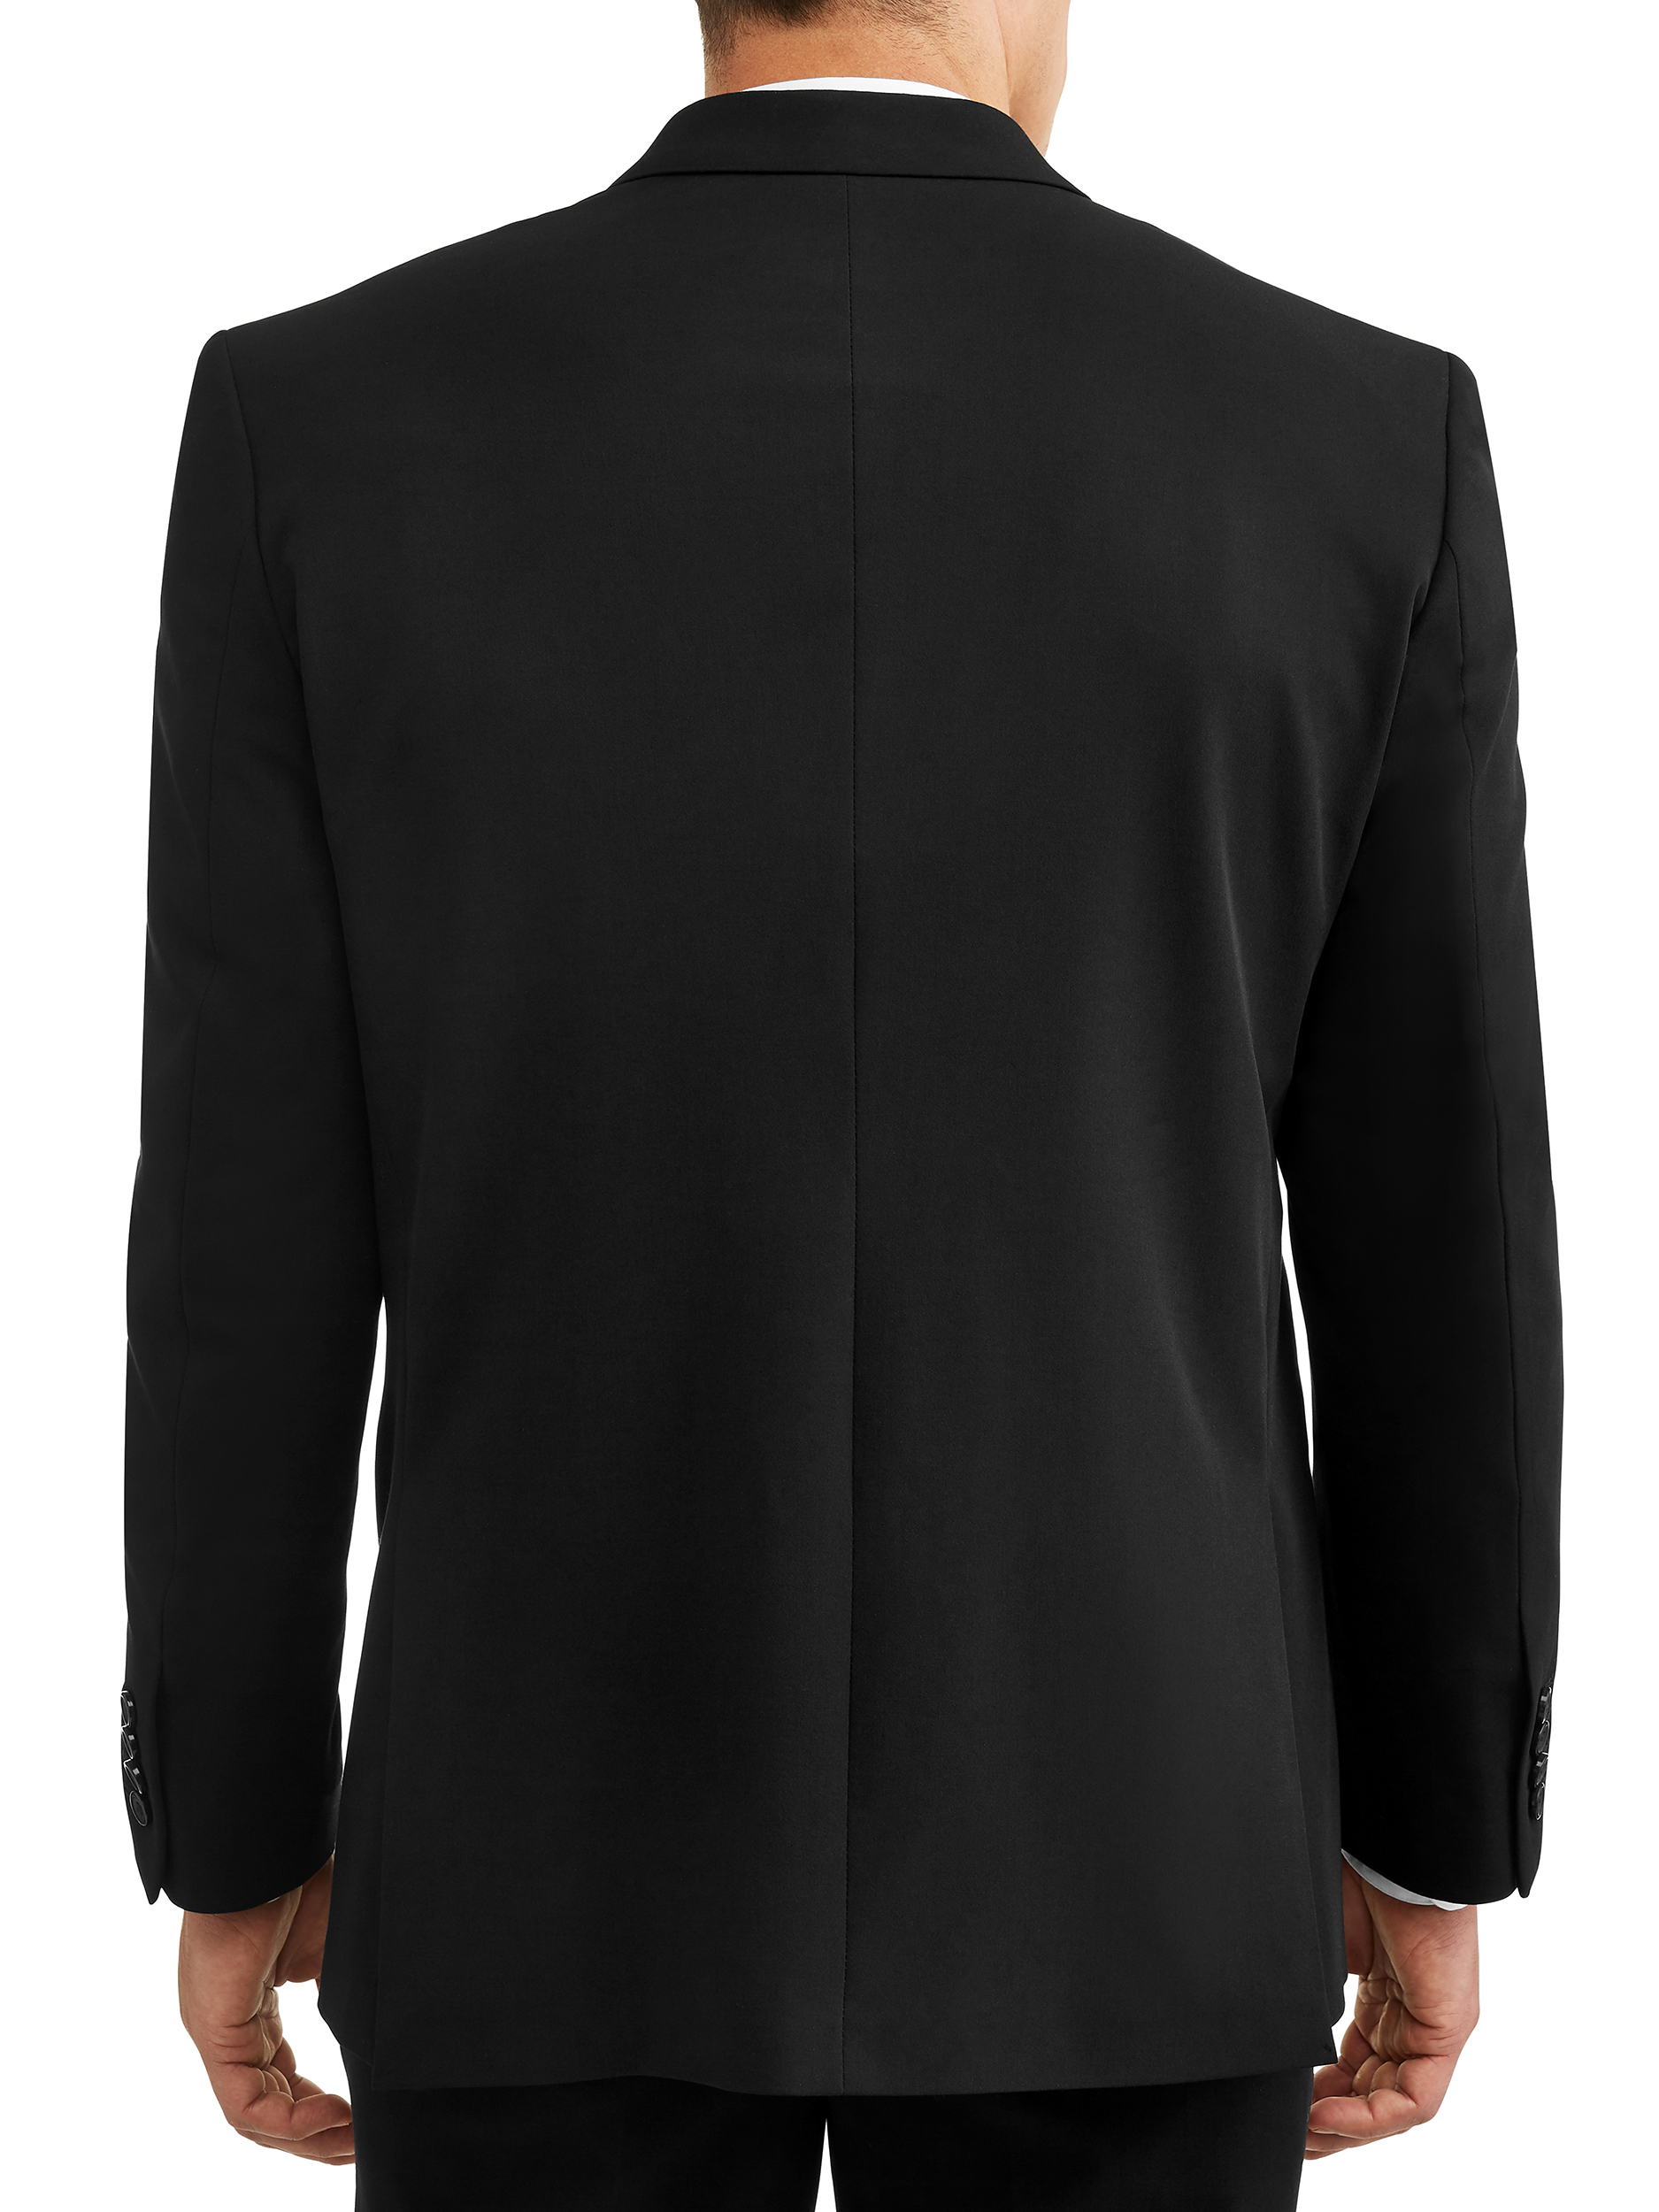 George Men's Premium Comfort Stretch Suit Jacket - image 5 of 5